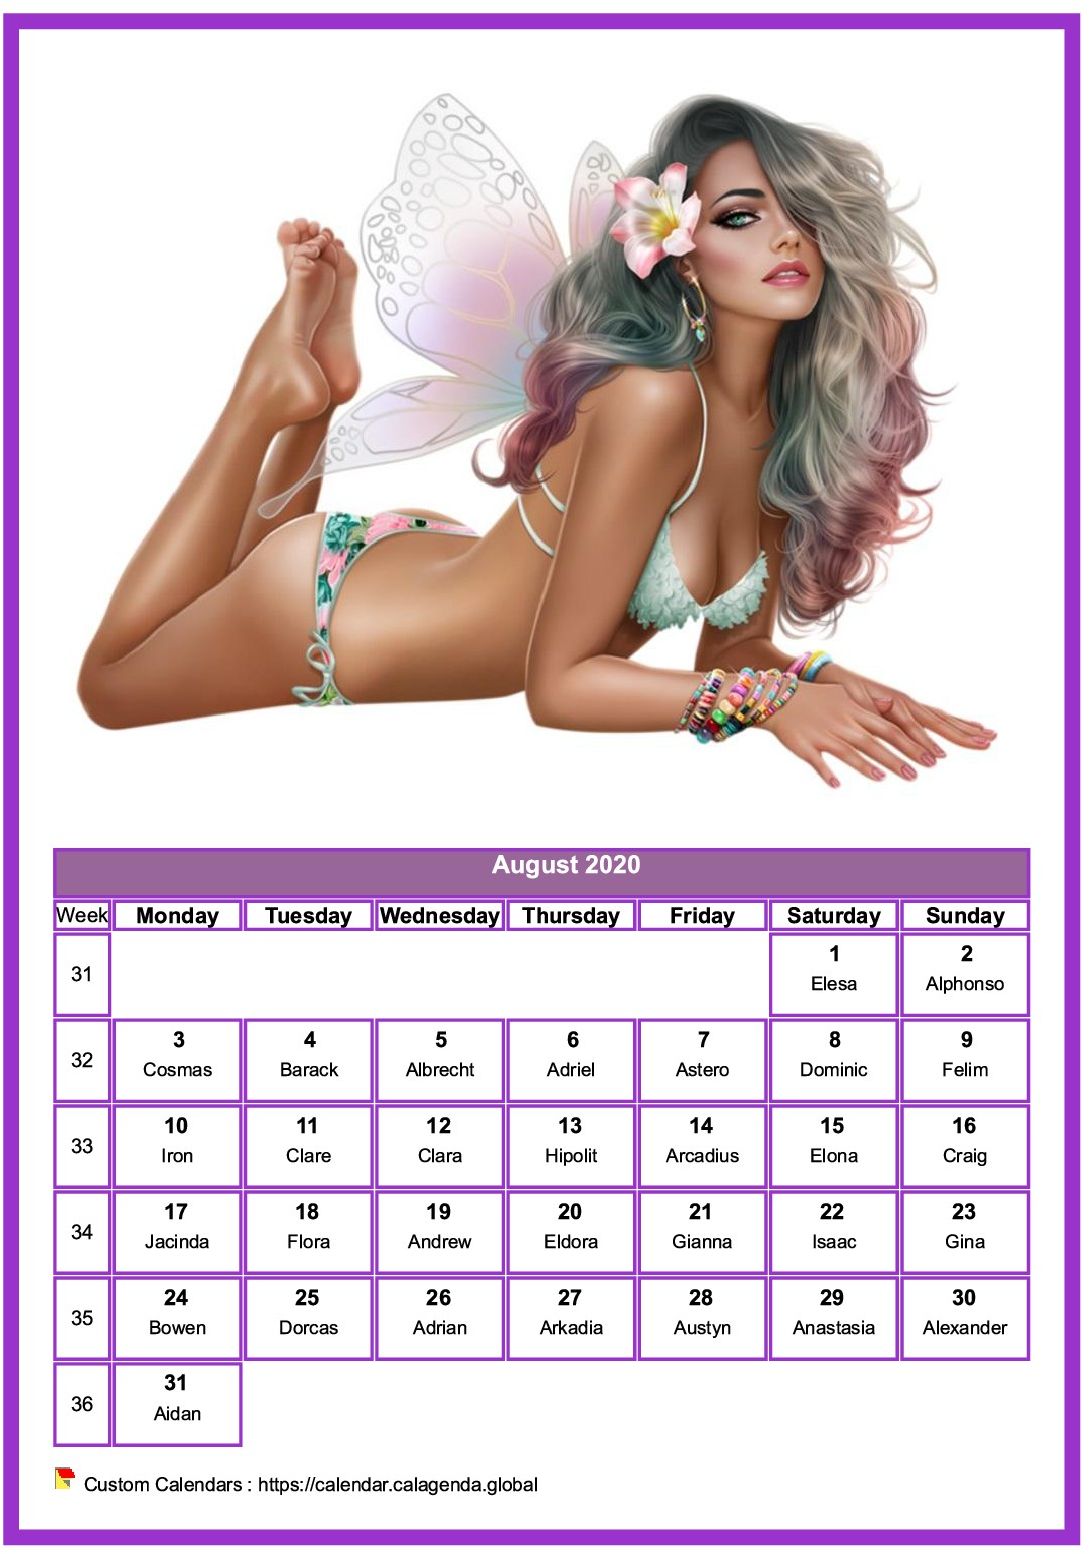 Calendar August 2020 women